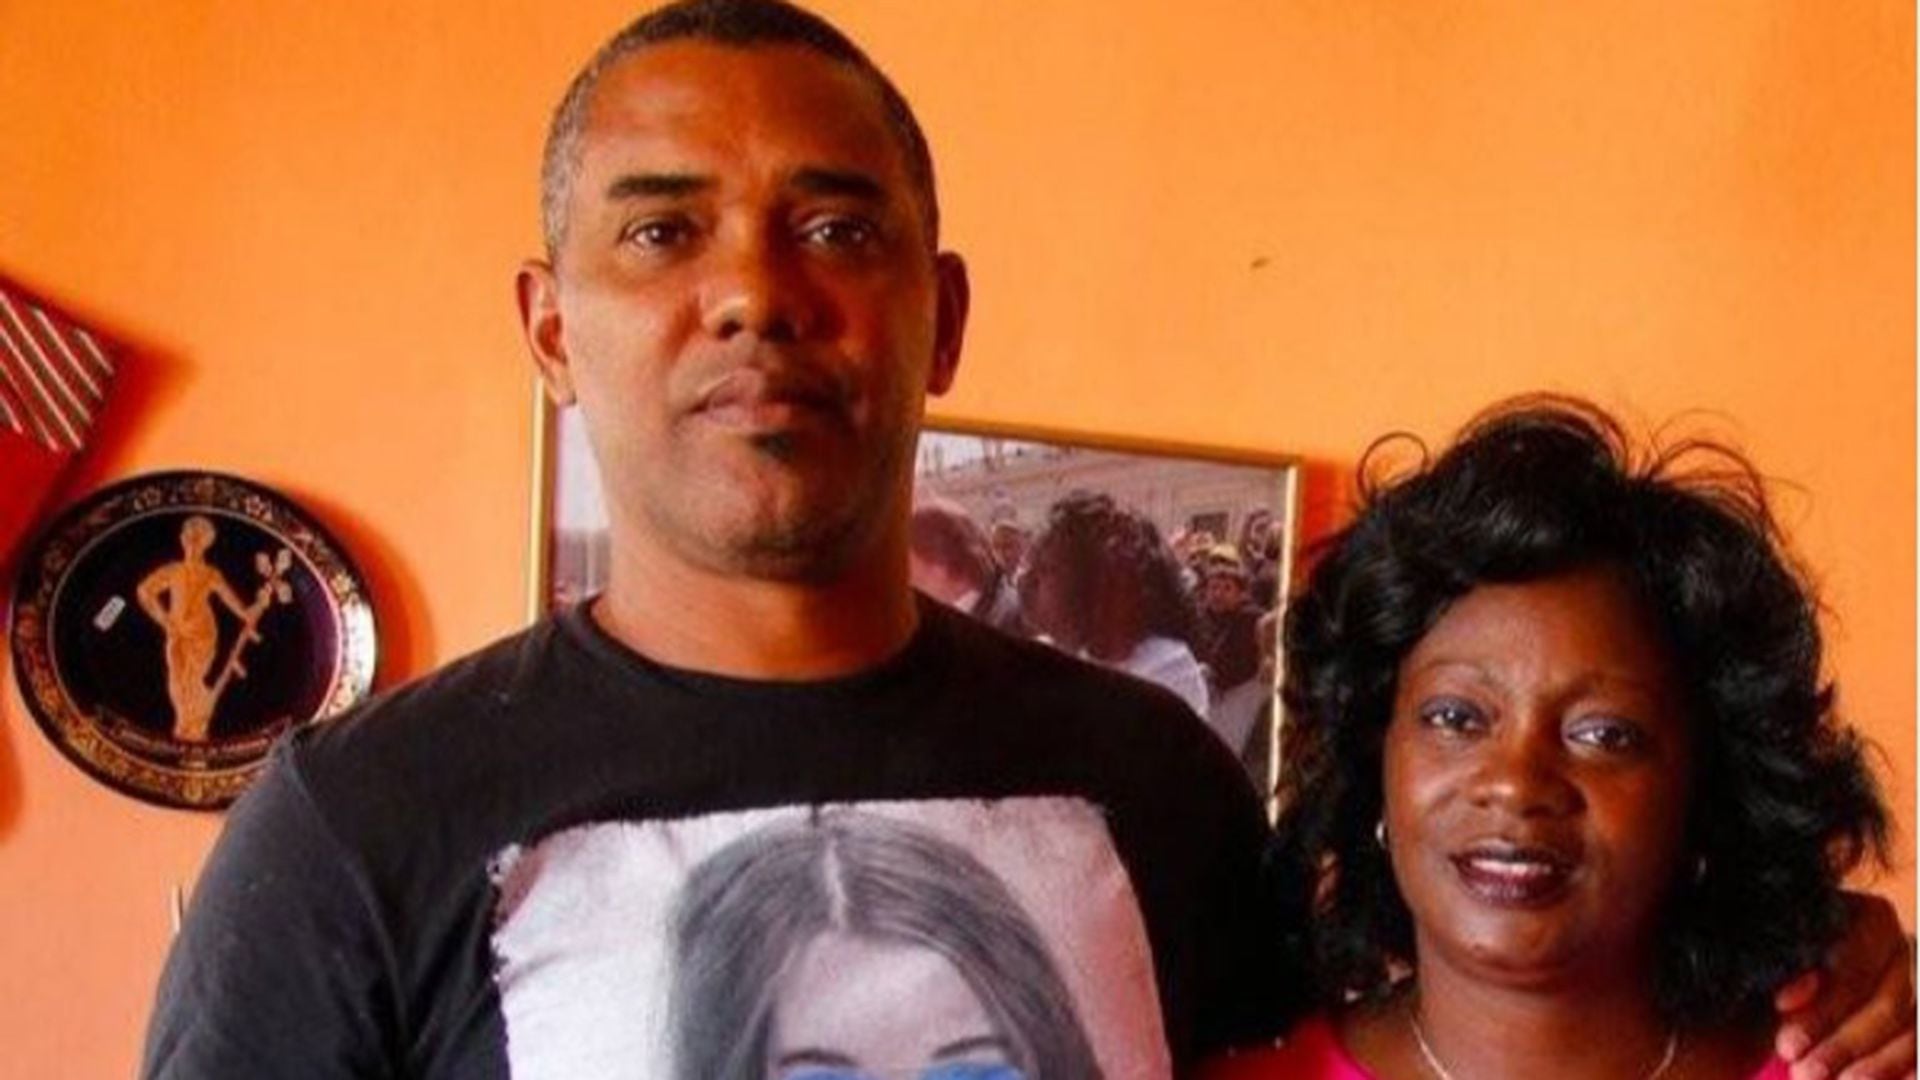 Berta Soler y su esposo Ángel Moya fueron detenidos arbitrariamente en La Habana